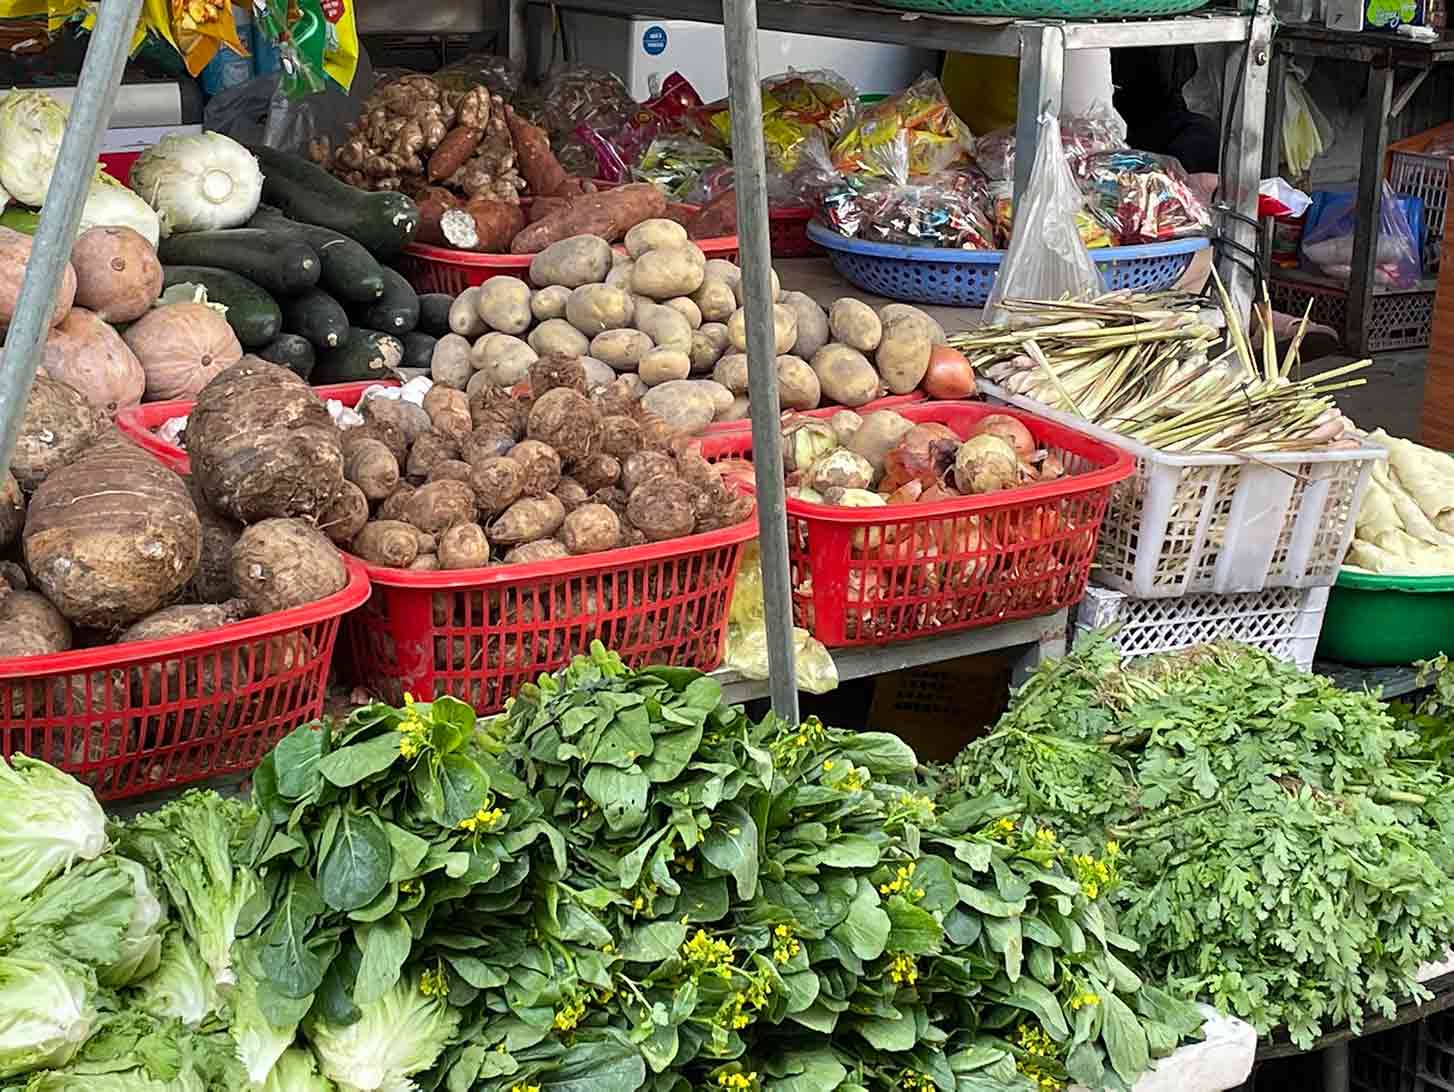 Rau tại chợ dân sinh cũng dần hết hàng đẹp, chủ yếu còn rau cũ, héo.